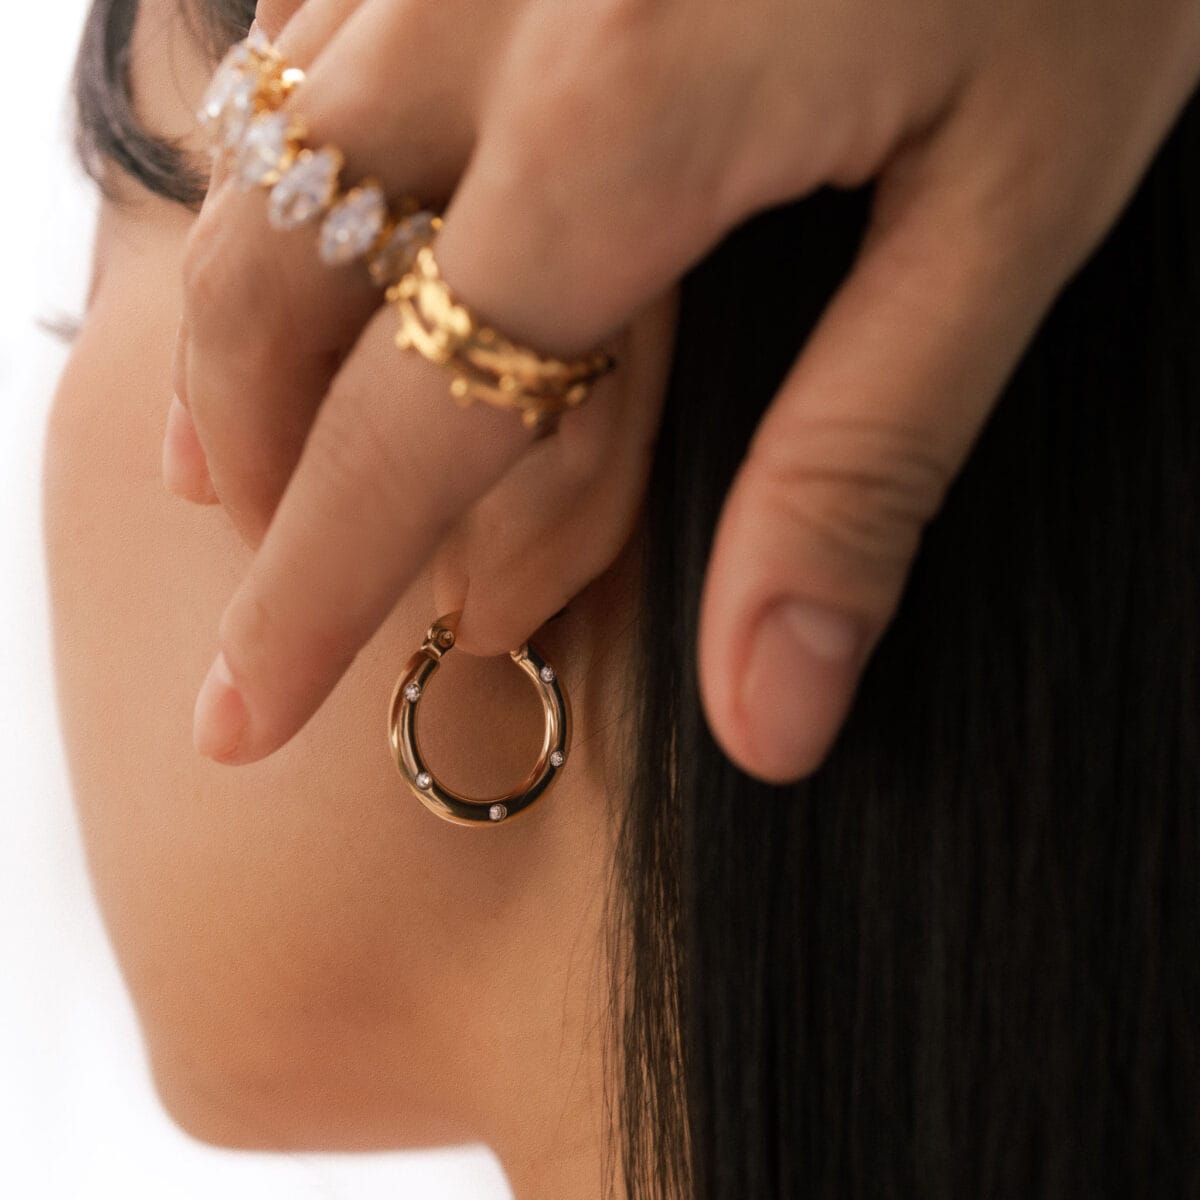 https://m.clubbella.co/product/estella-gold-hoop-earrings/ Estella Hoop Earrings 233